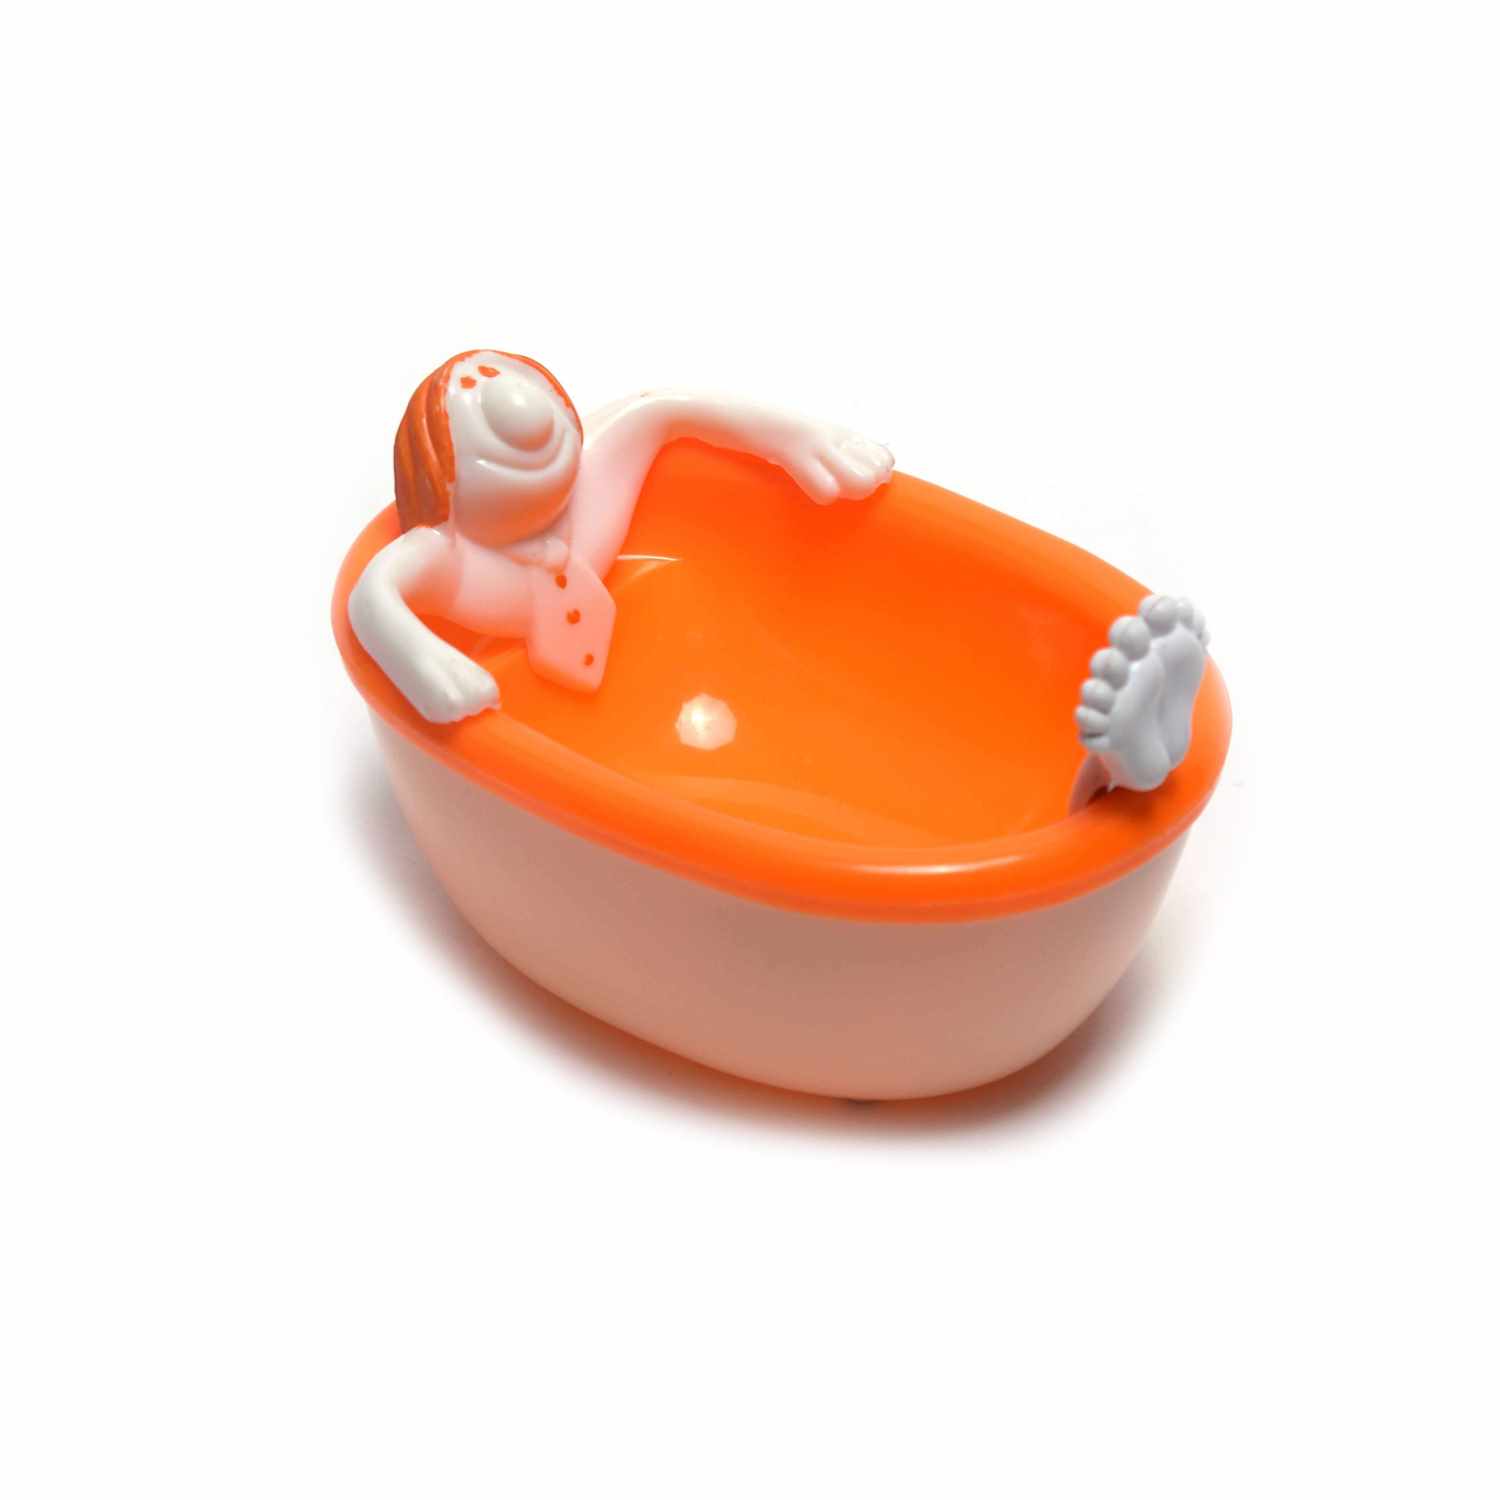 Bathing tub model soap box